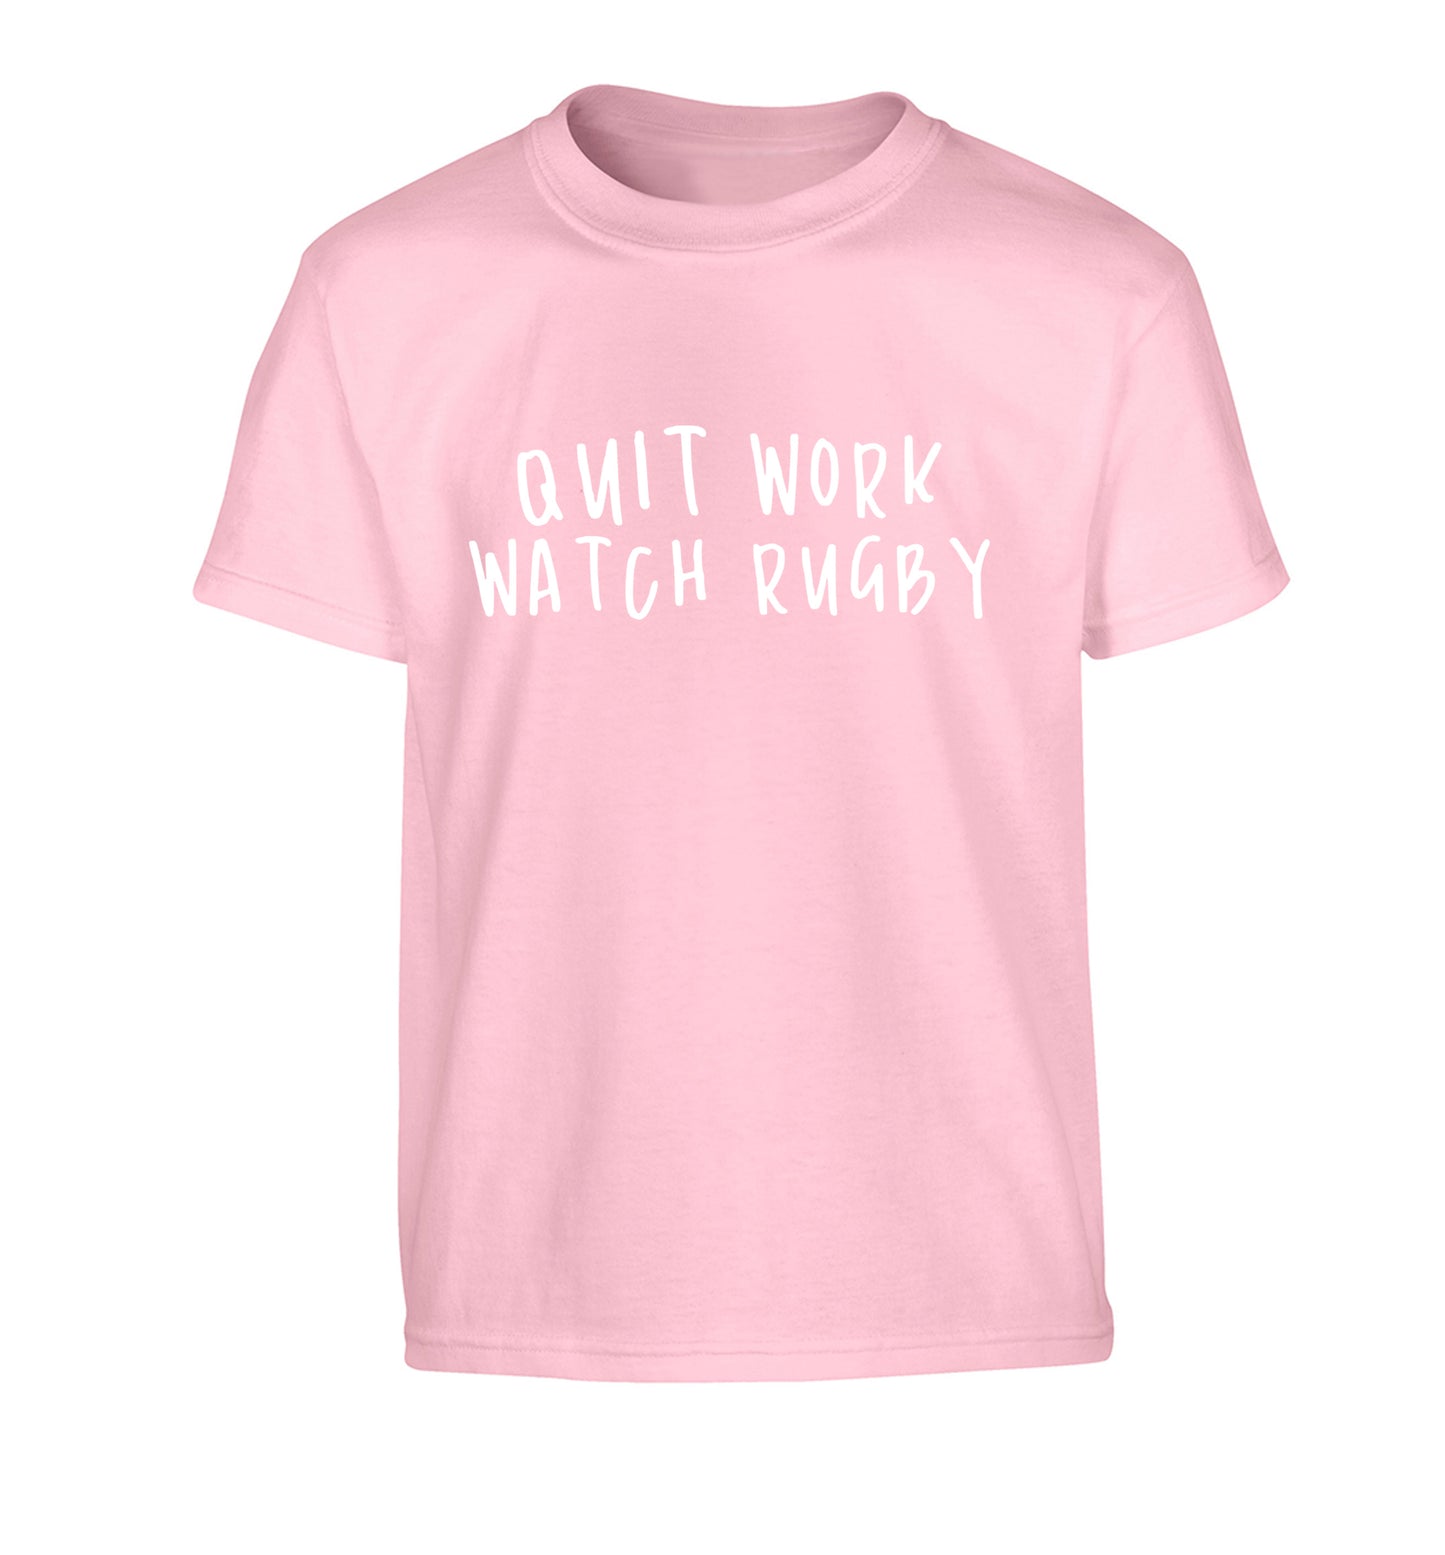 Quit work watch rugby Children's light pink Tshirt 12-13 Years